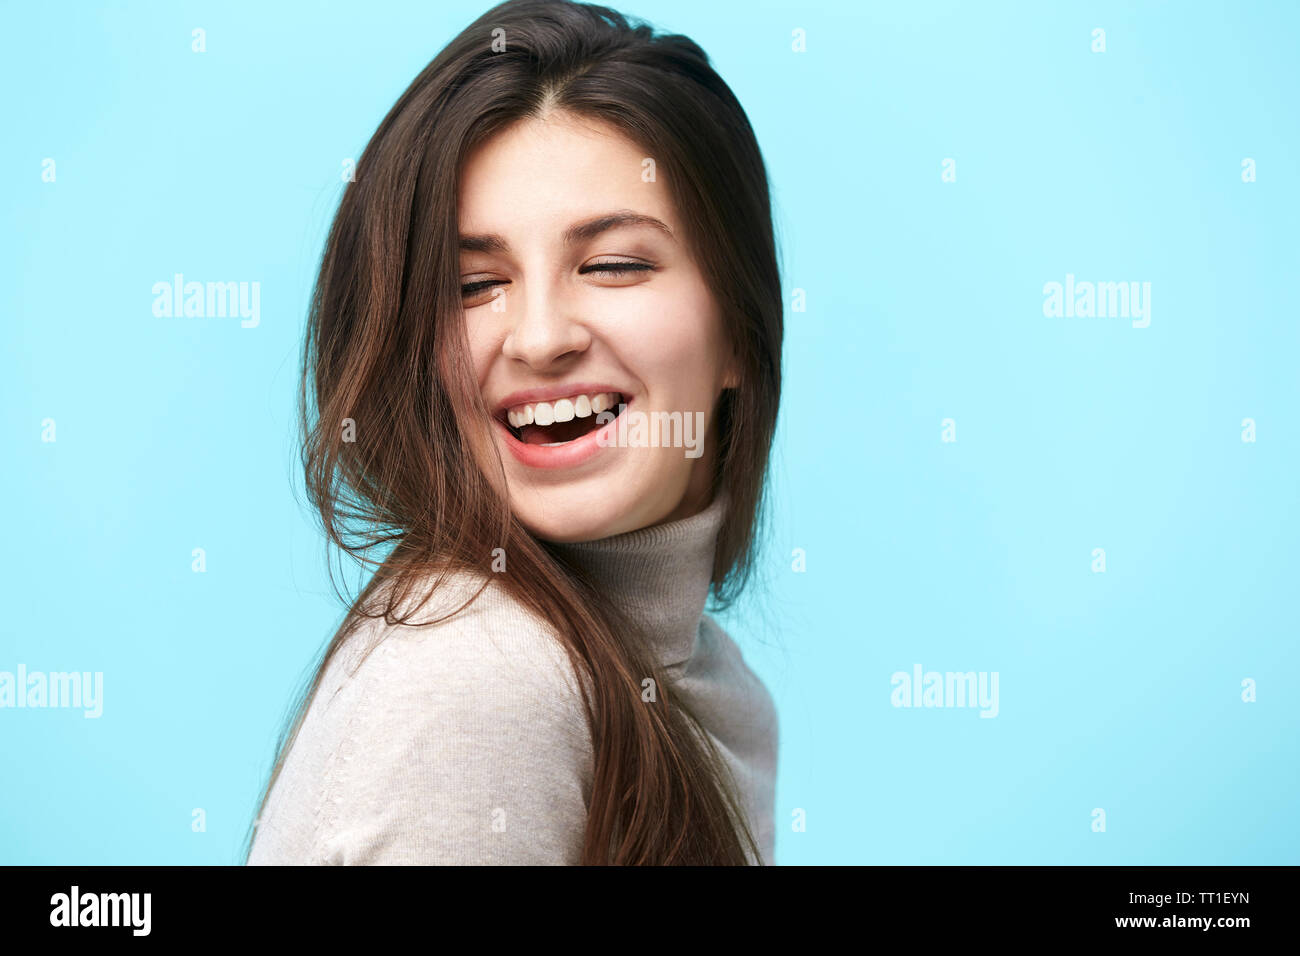 Portrait of a young woman with long hair, heureux et souriants, isolé sur fond bleu Banque D'Images